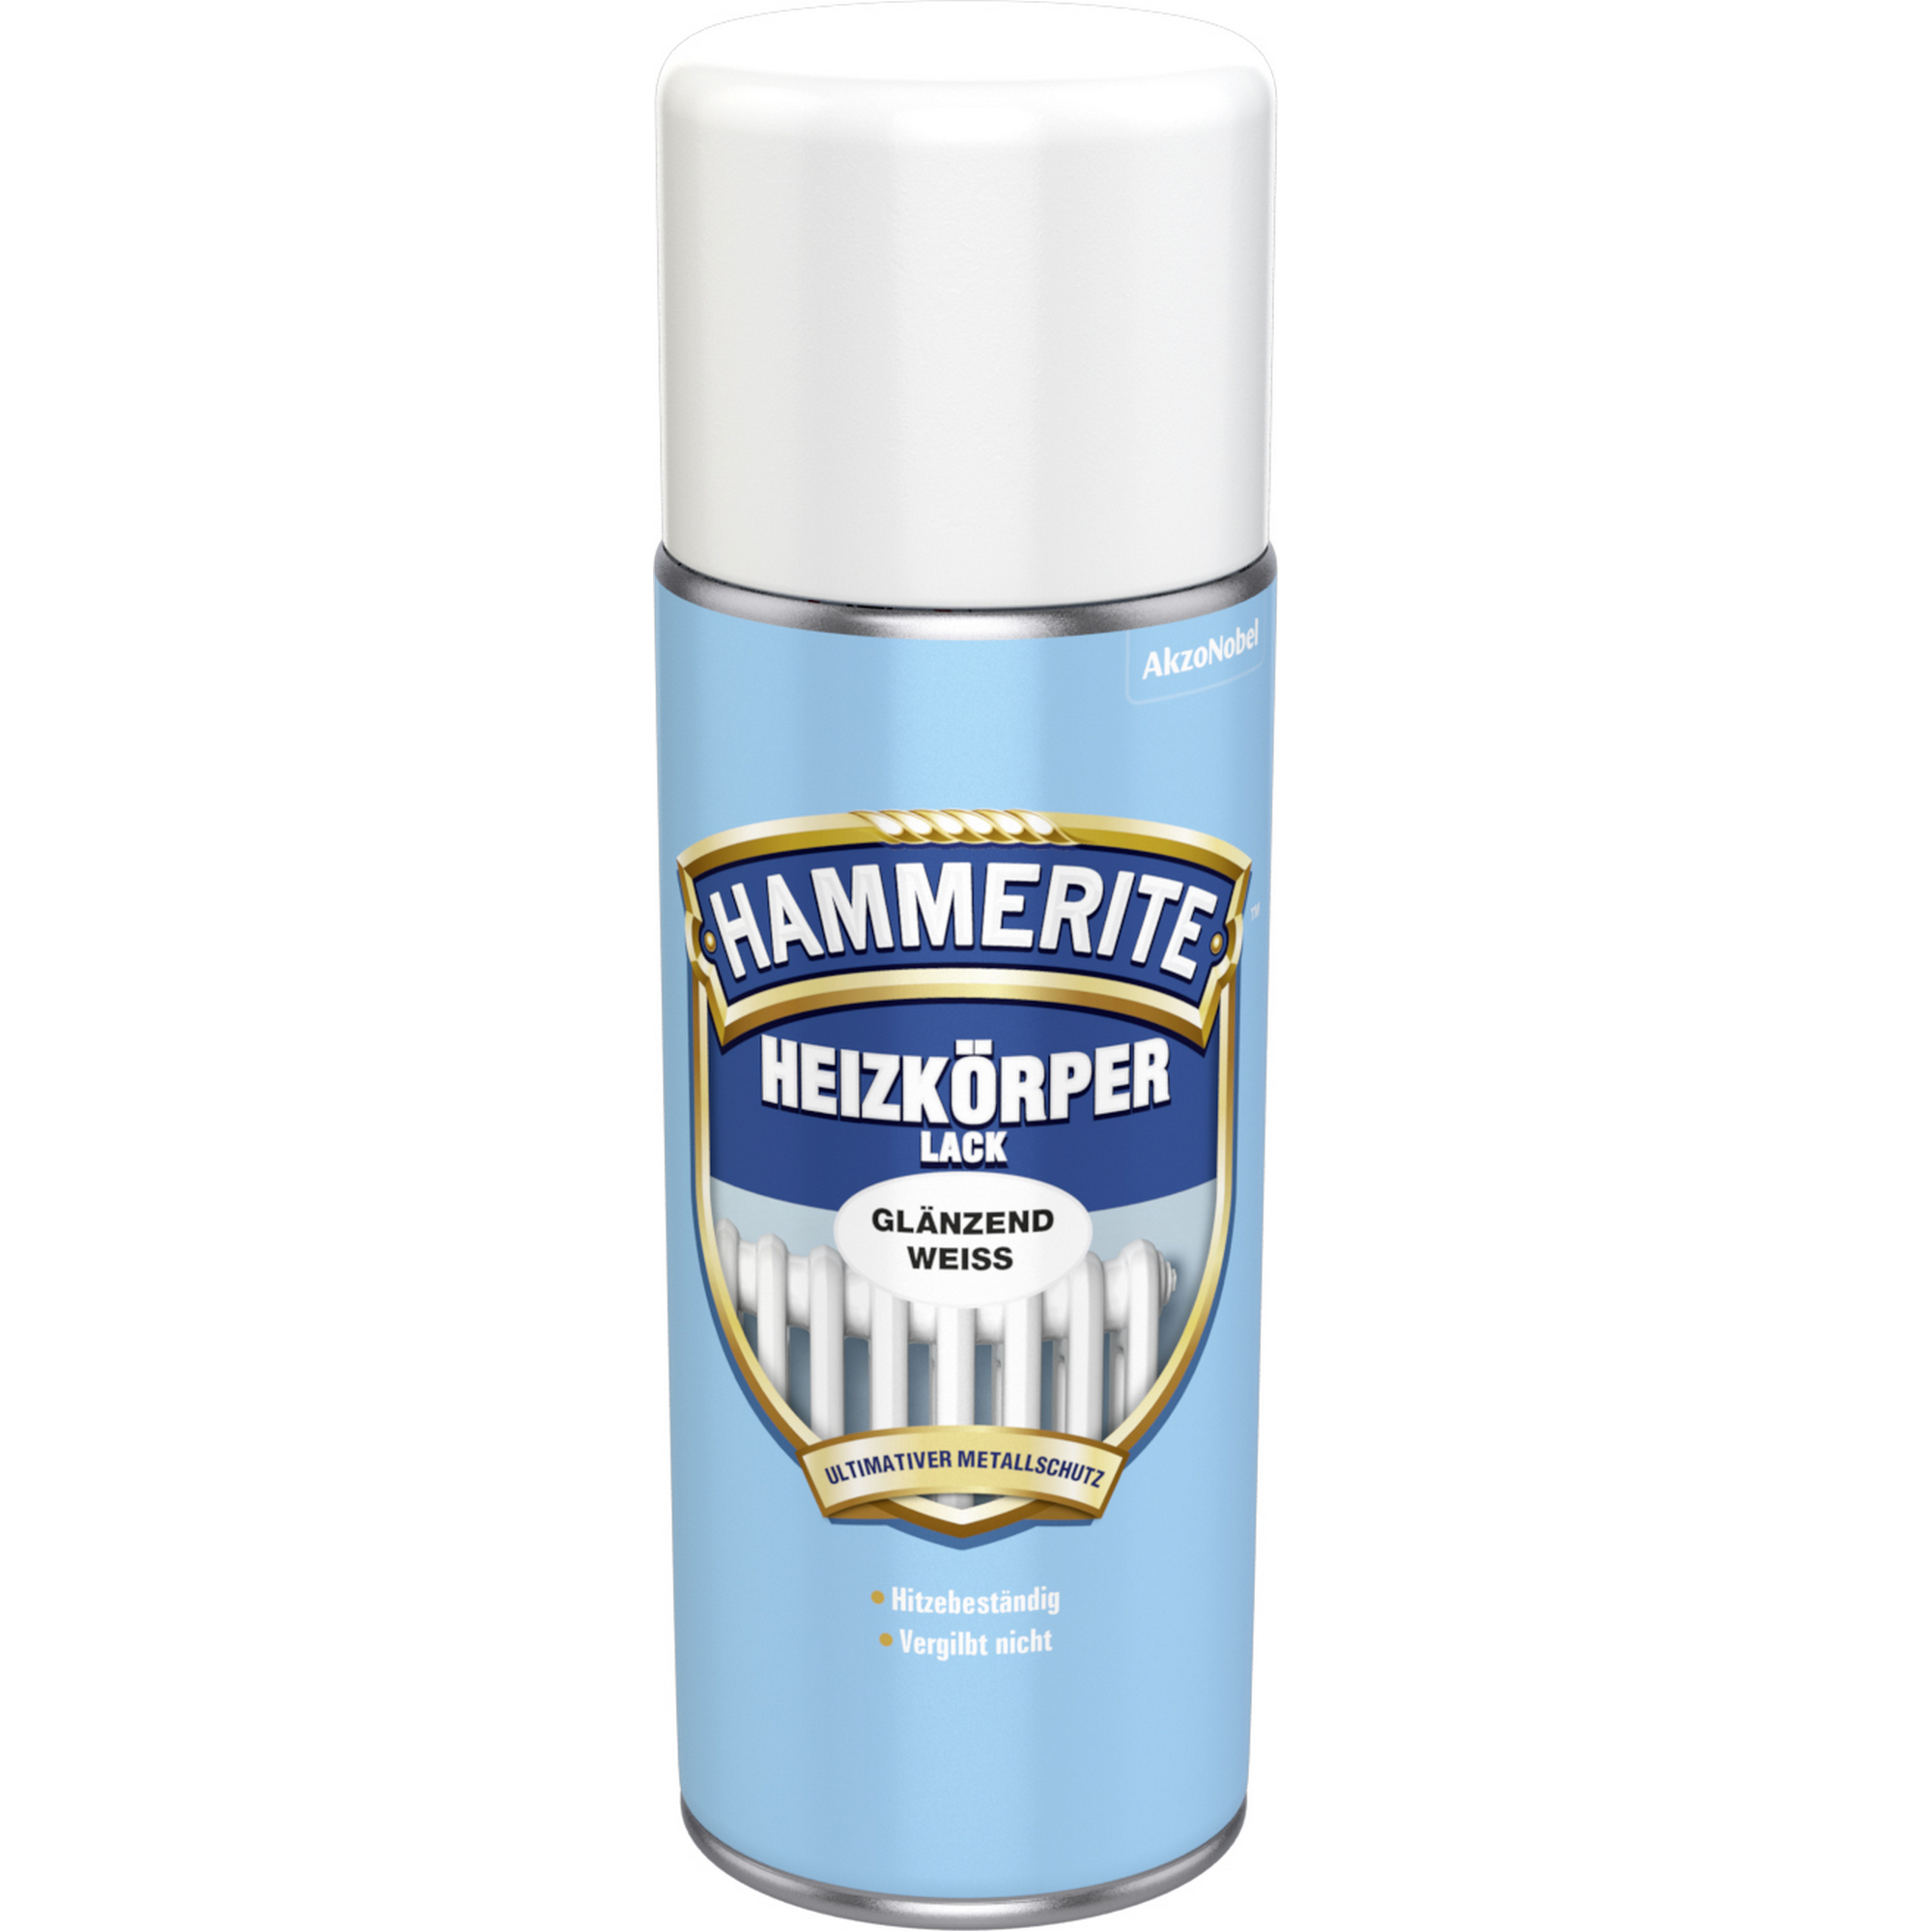 Heizkörperlack-Spray weiß glänzend 400 ml + product picture